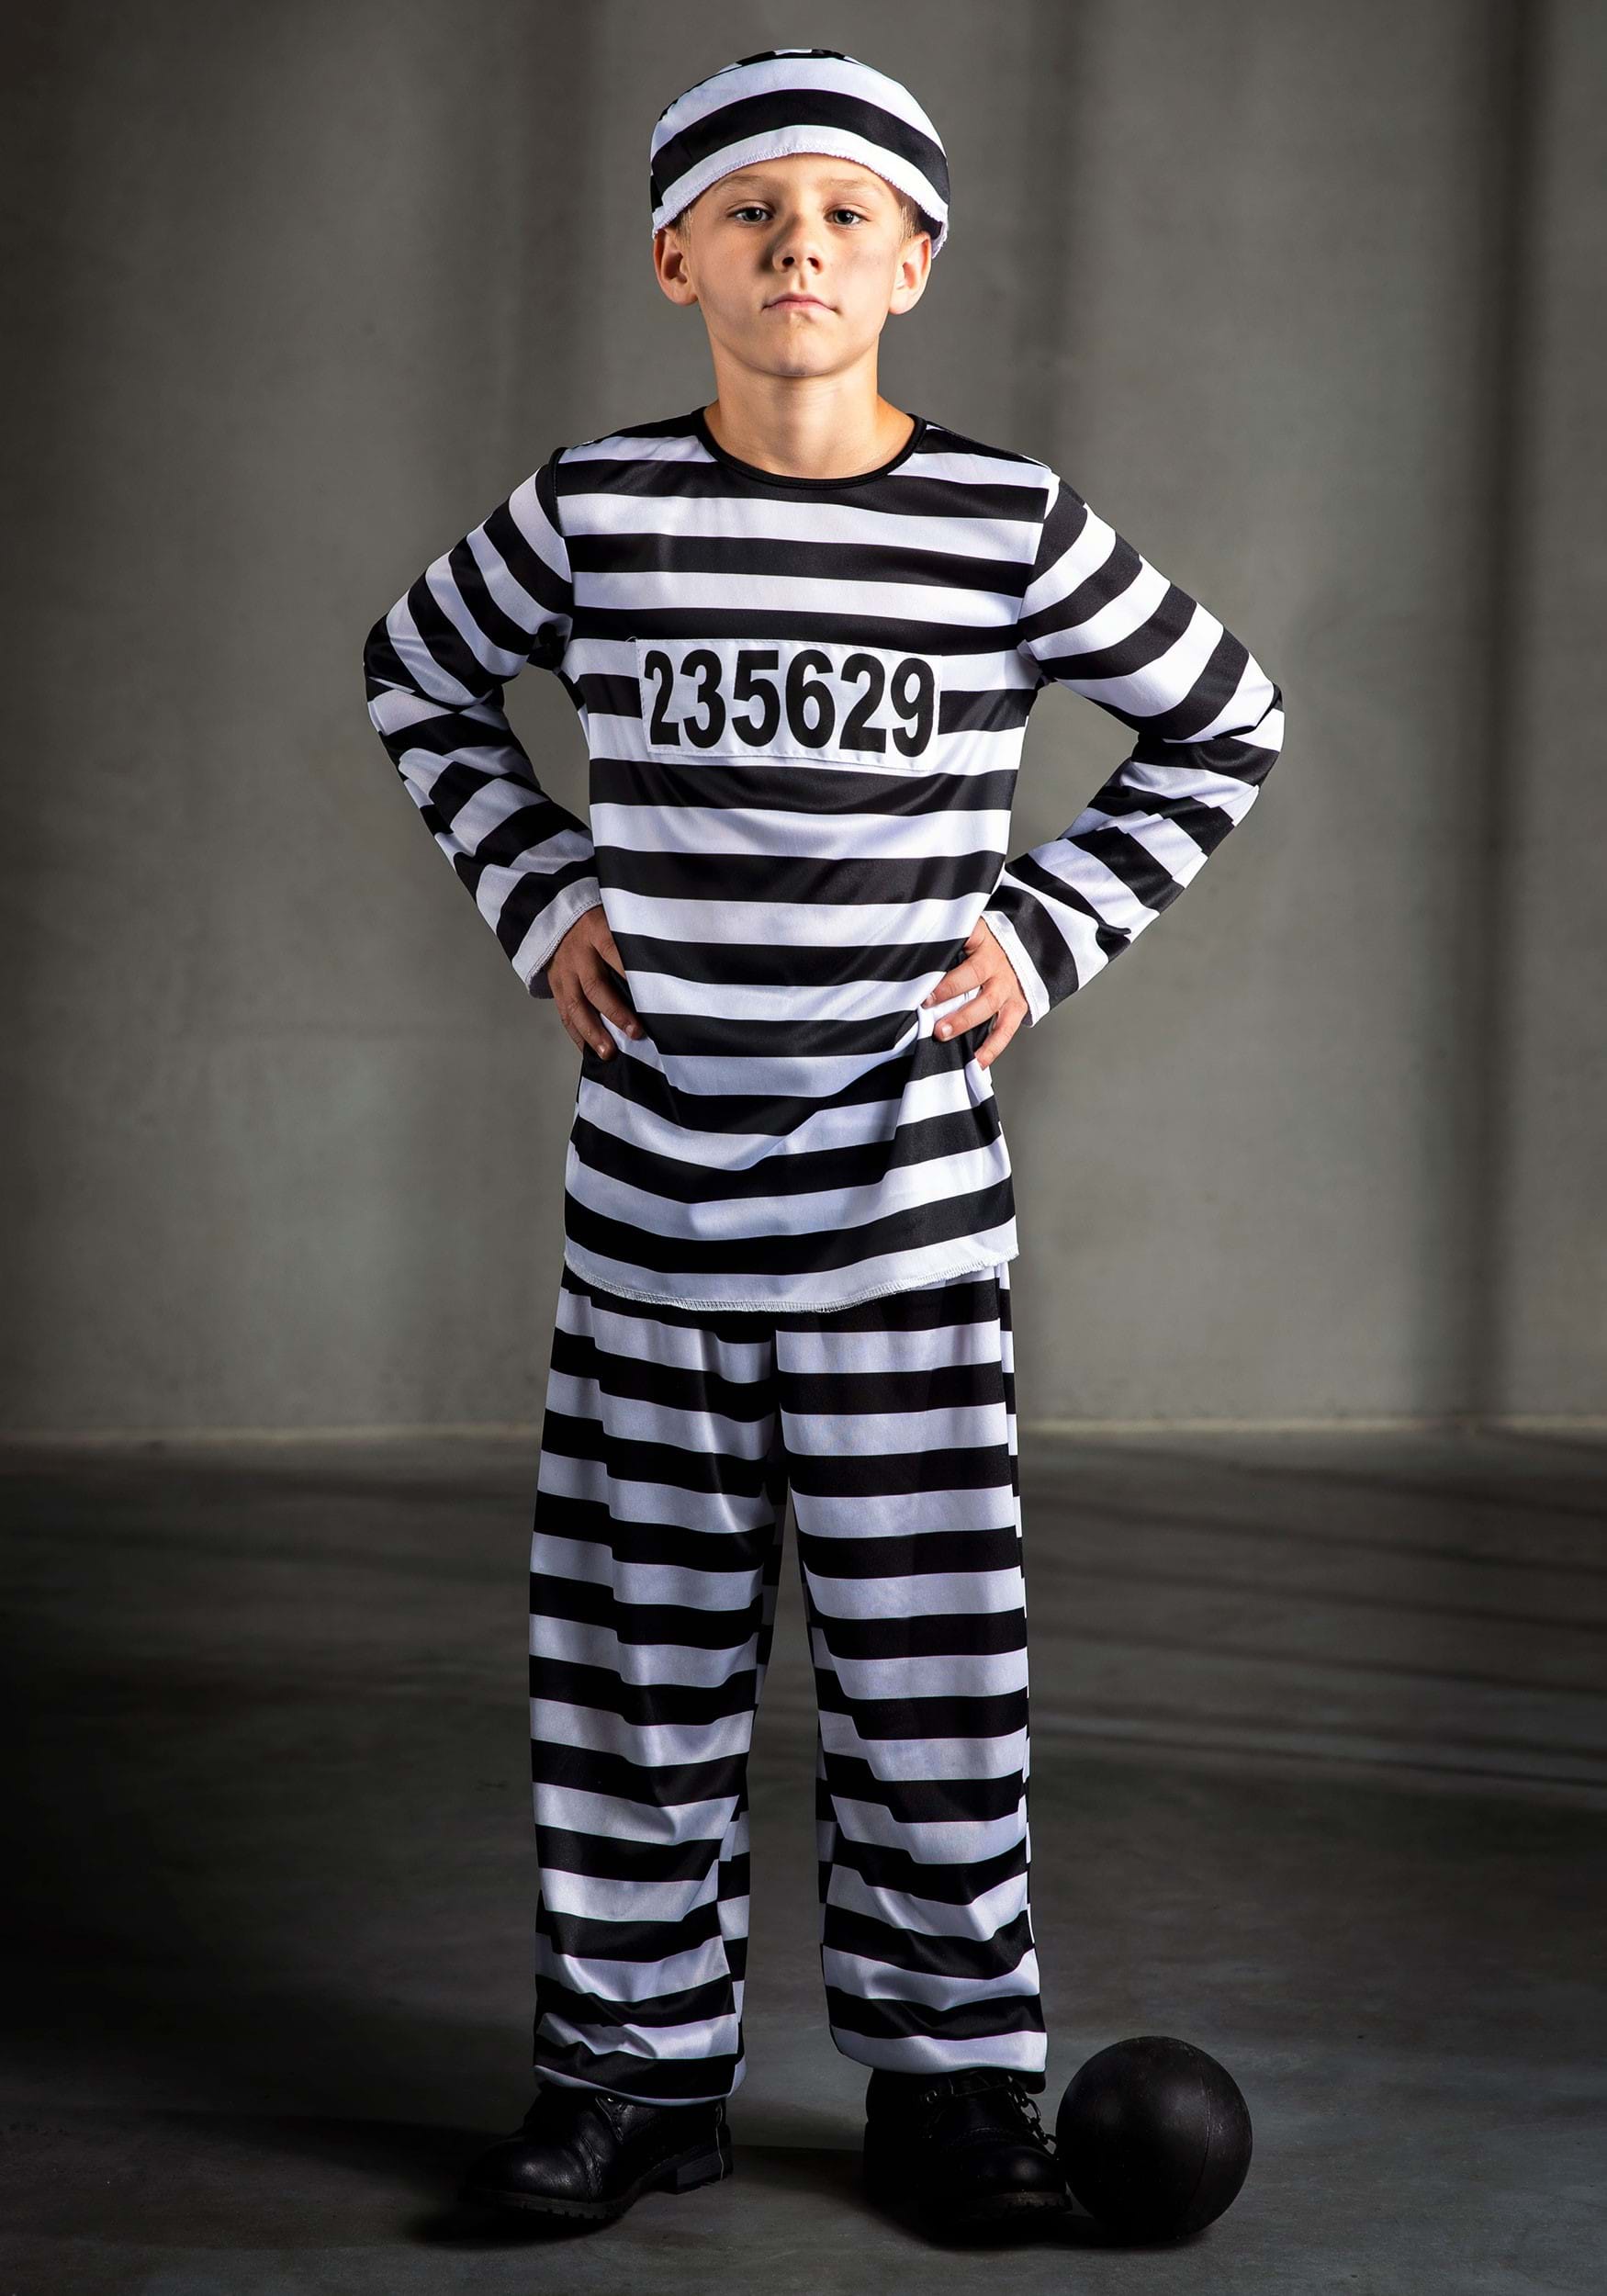 Verzwakken fort Annoteren Boys Prisoner Costume